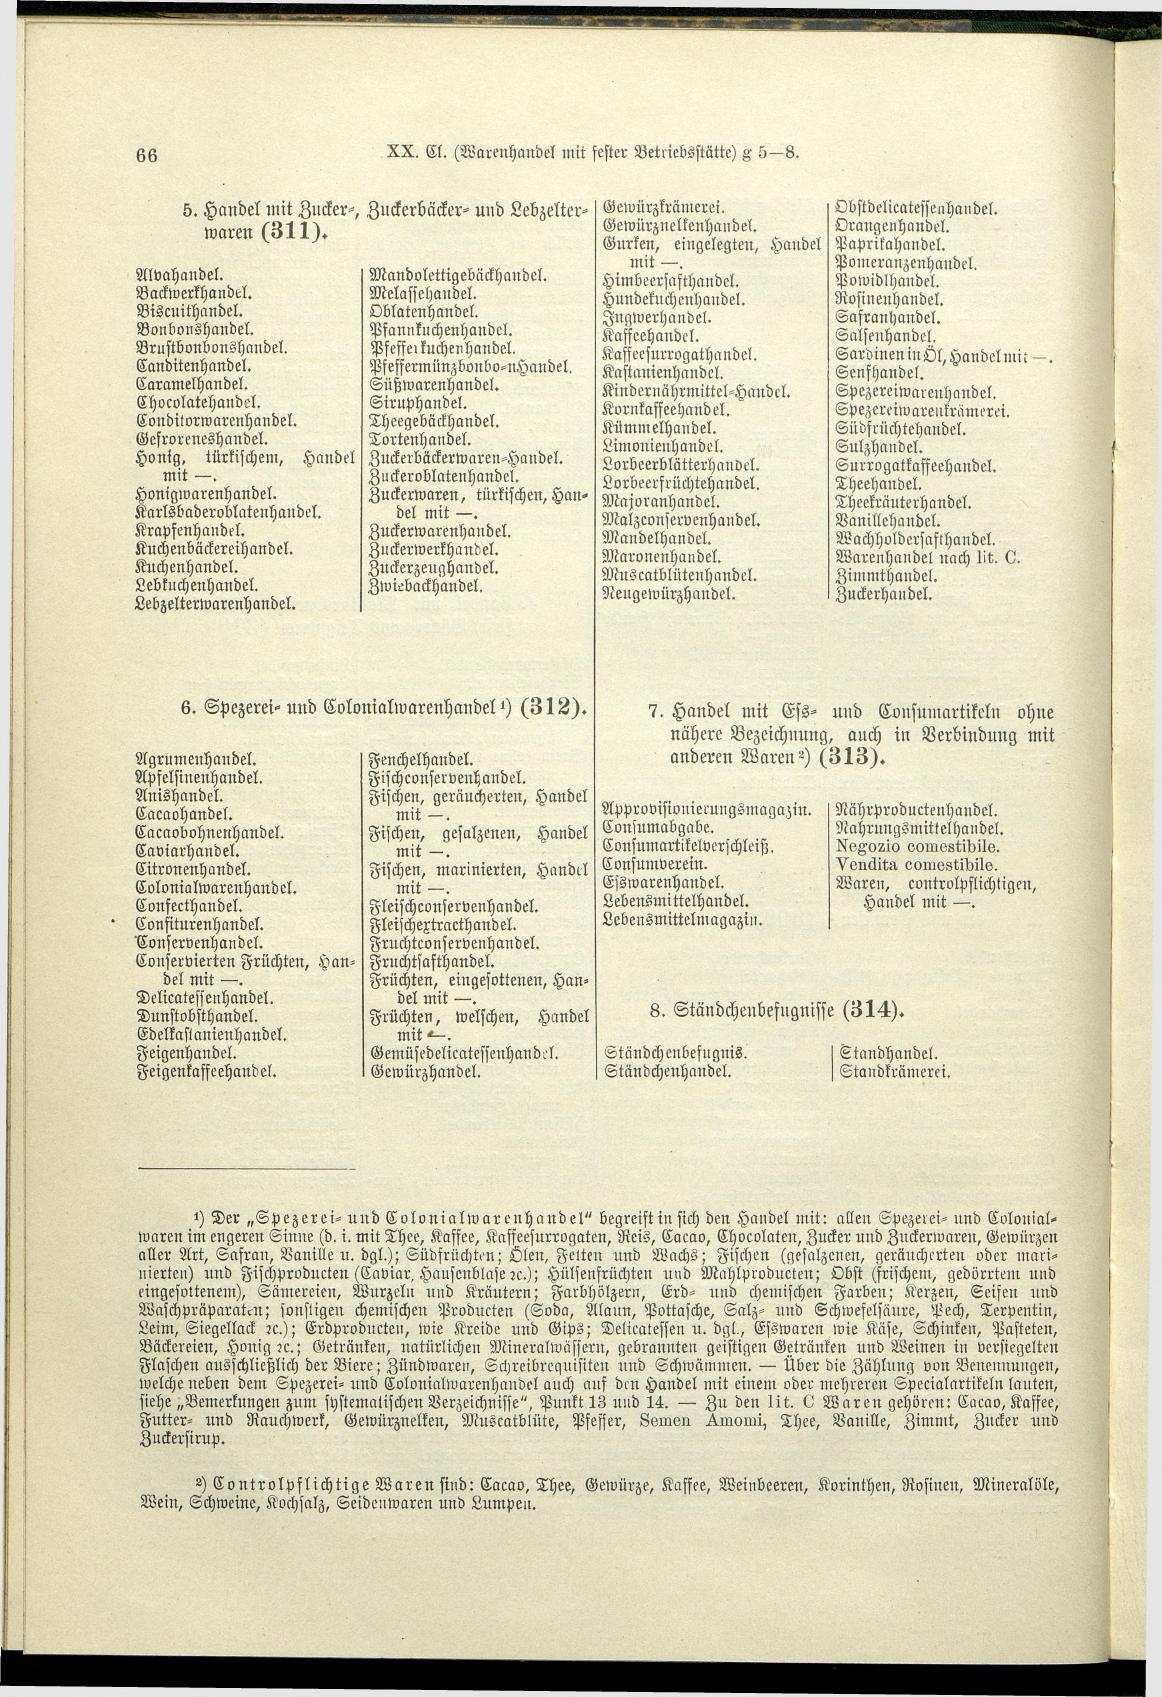 Verzeichnis der Gewerbe der im Reichsrathe vertretenen Königreiche und Länder 1900 - Page 70